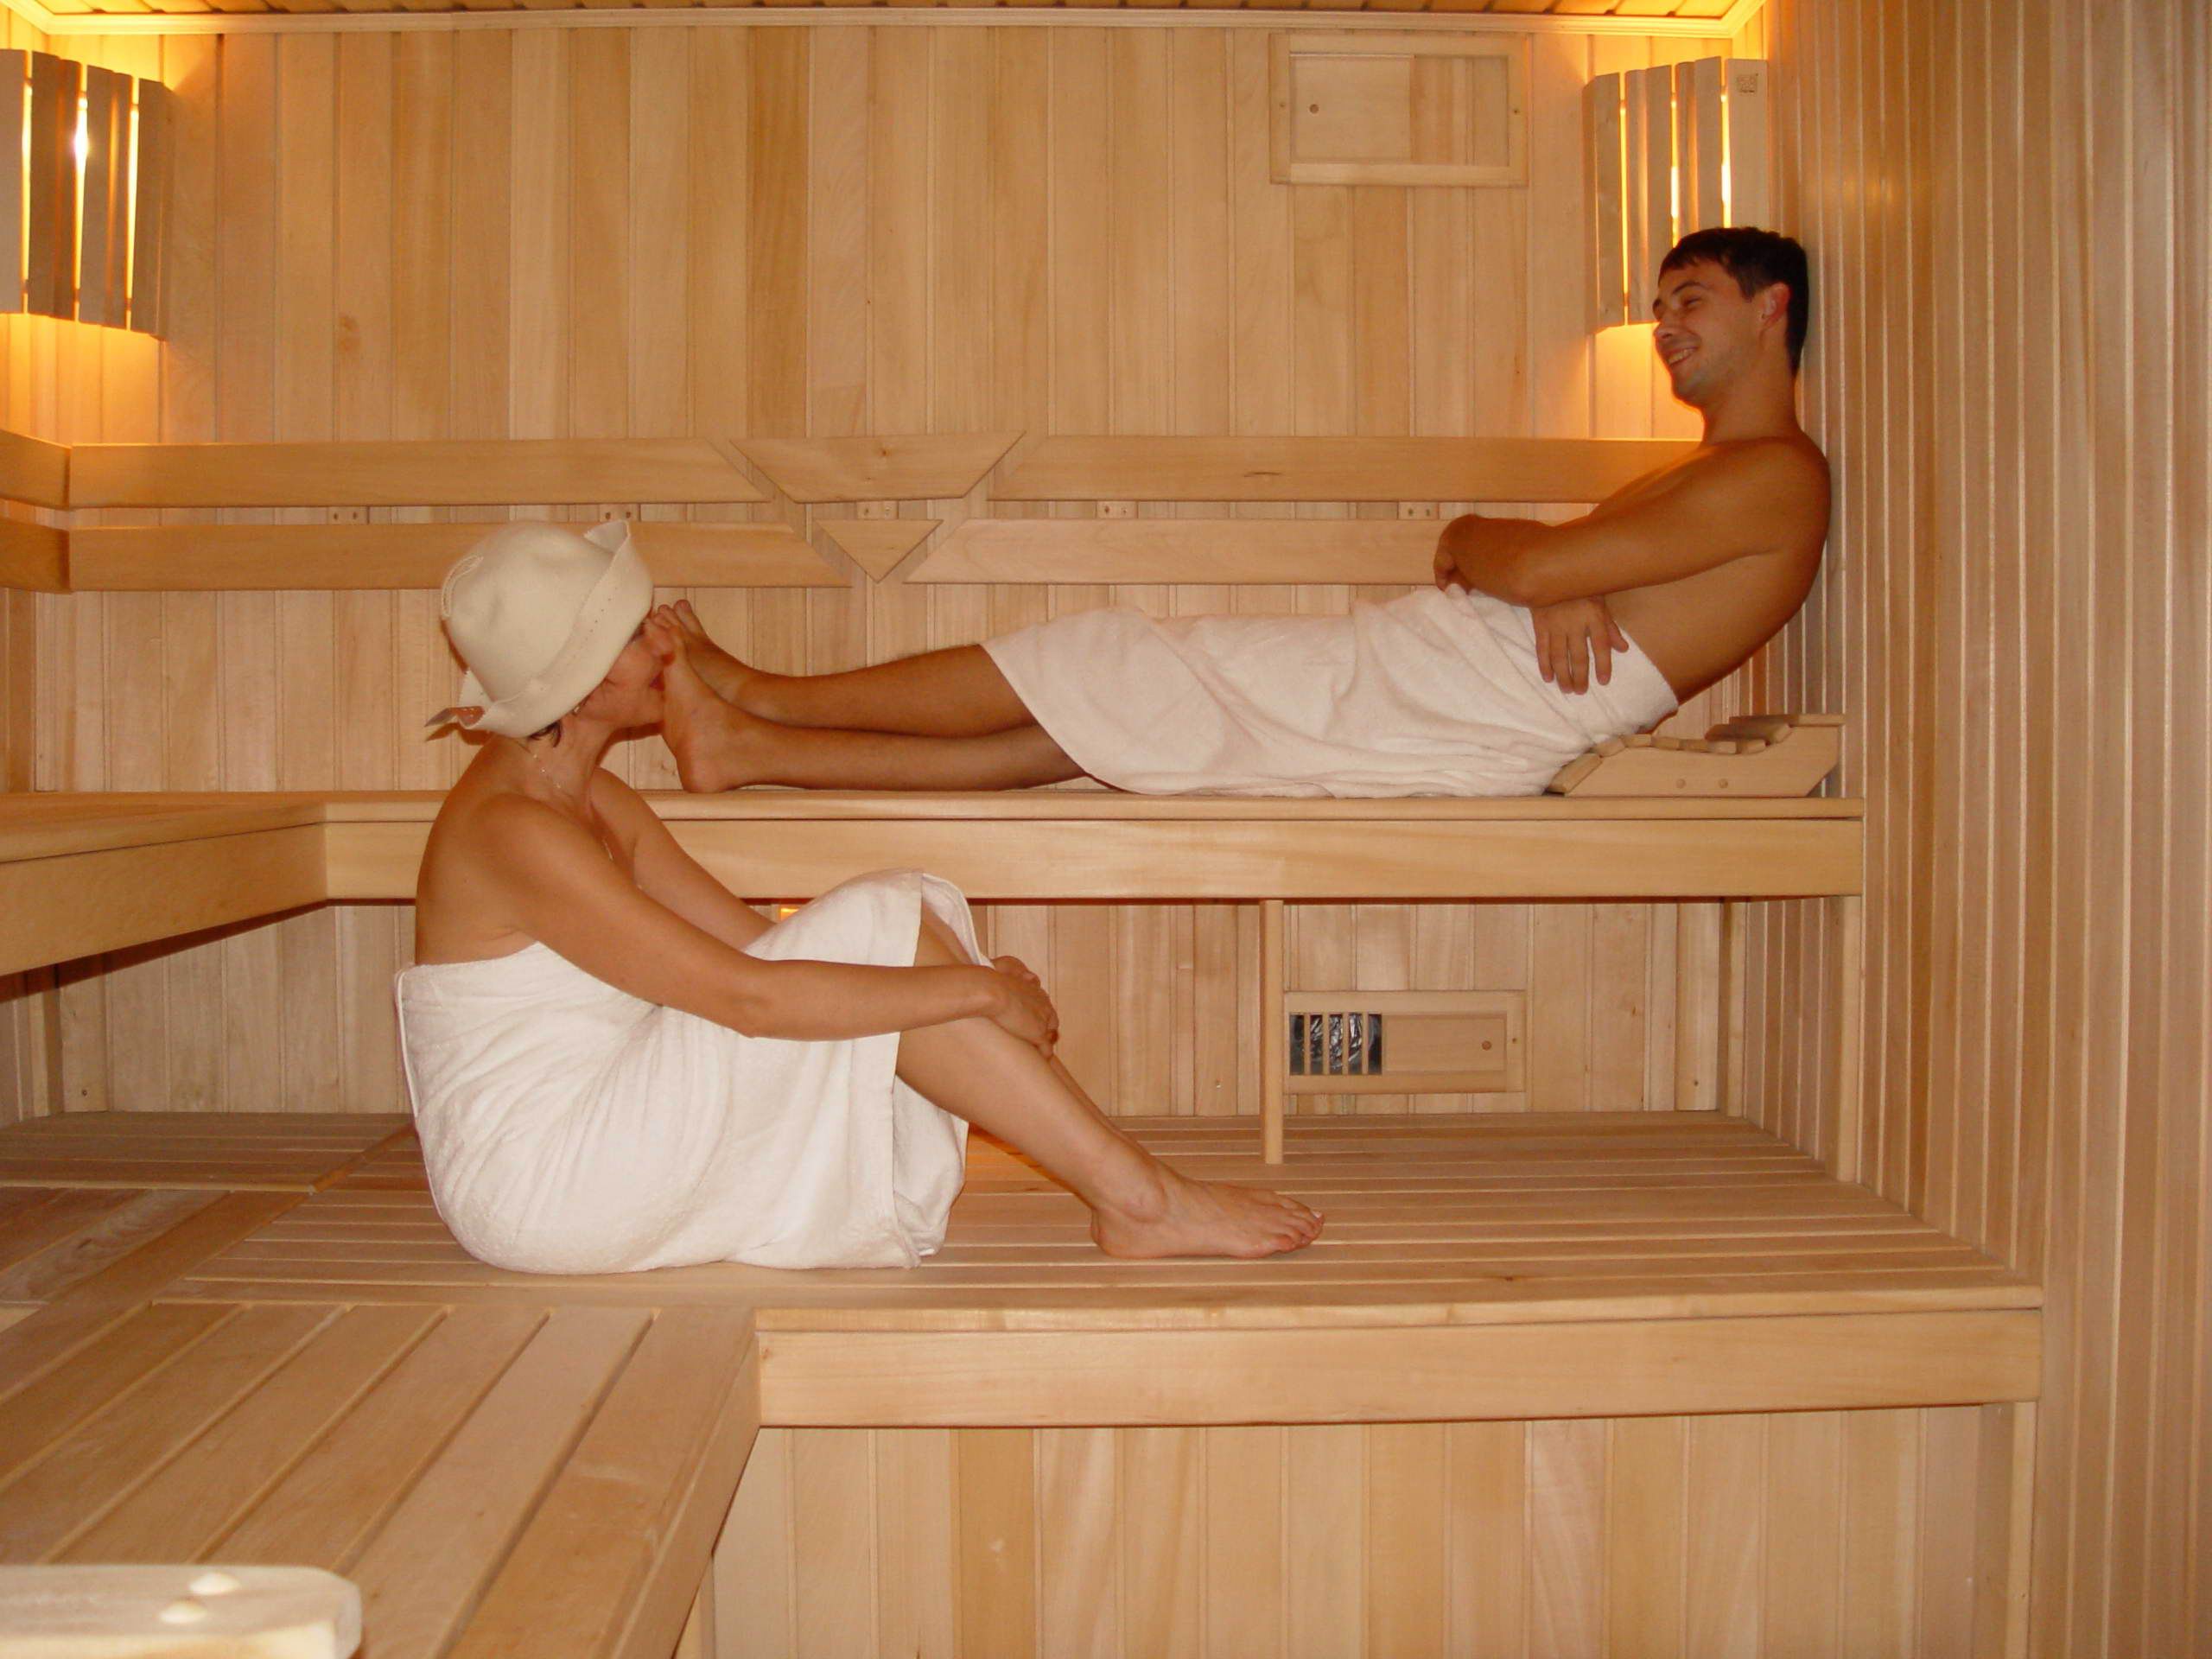 Bi sauna